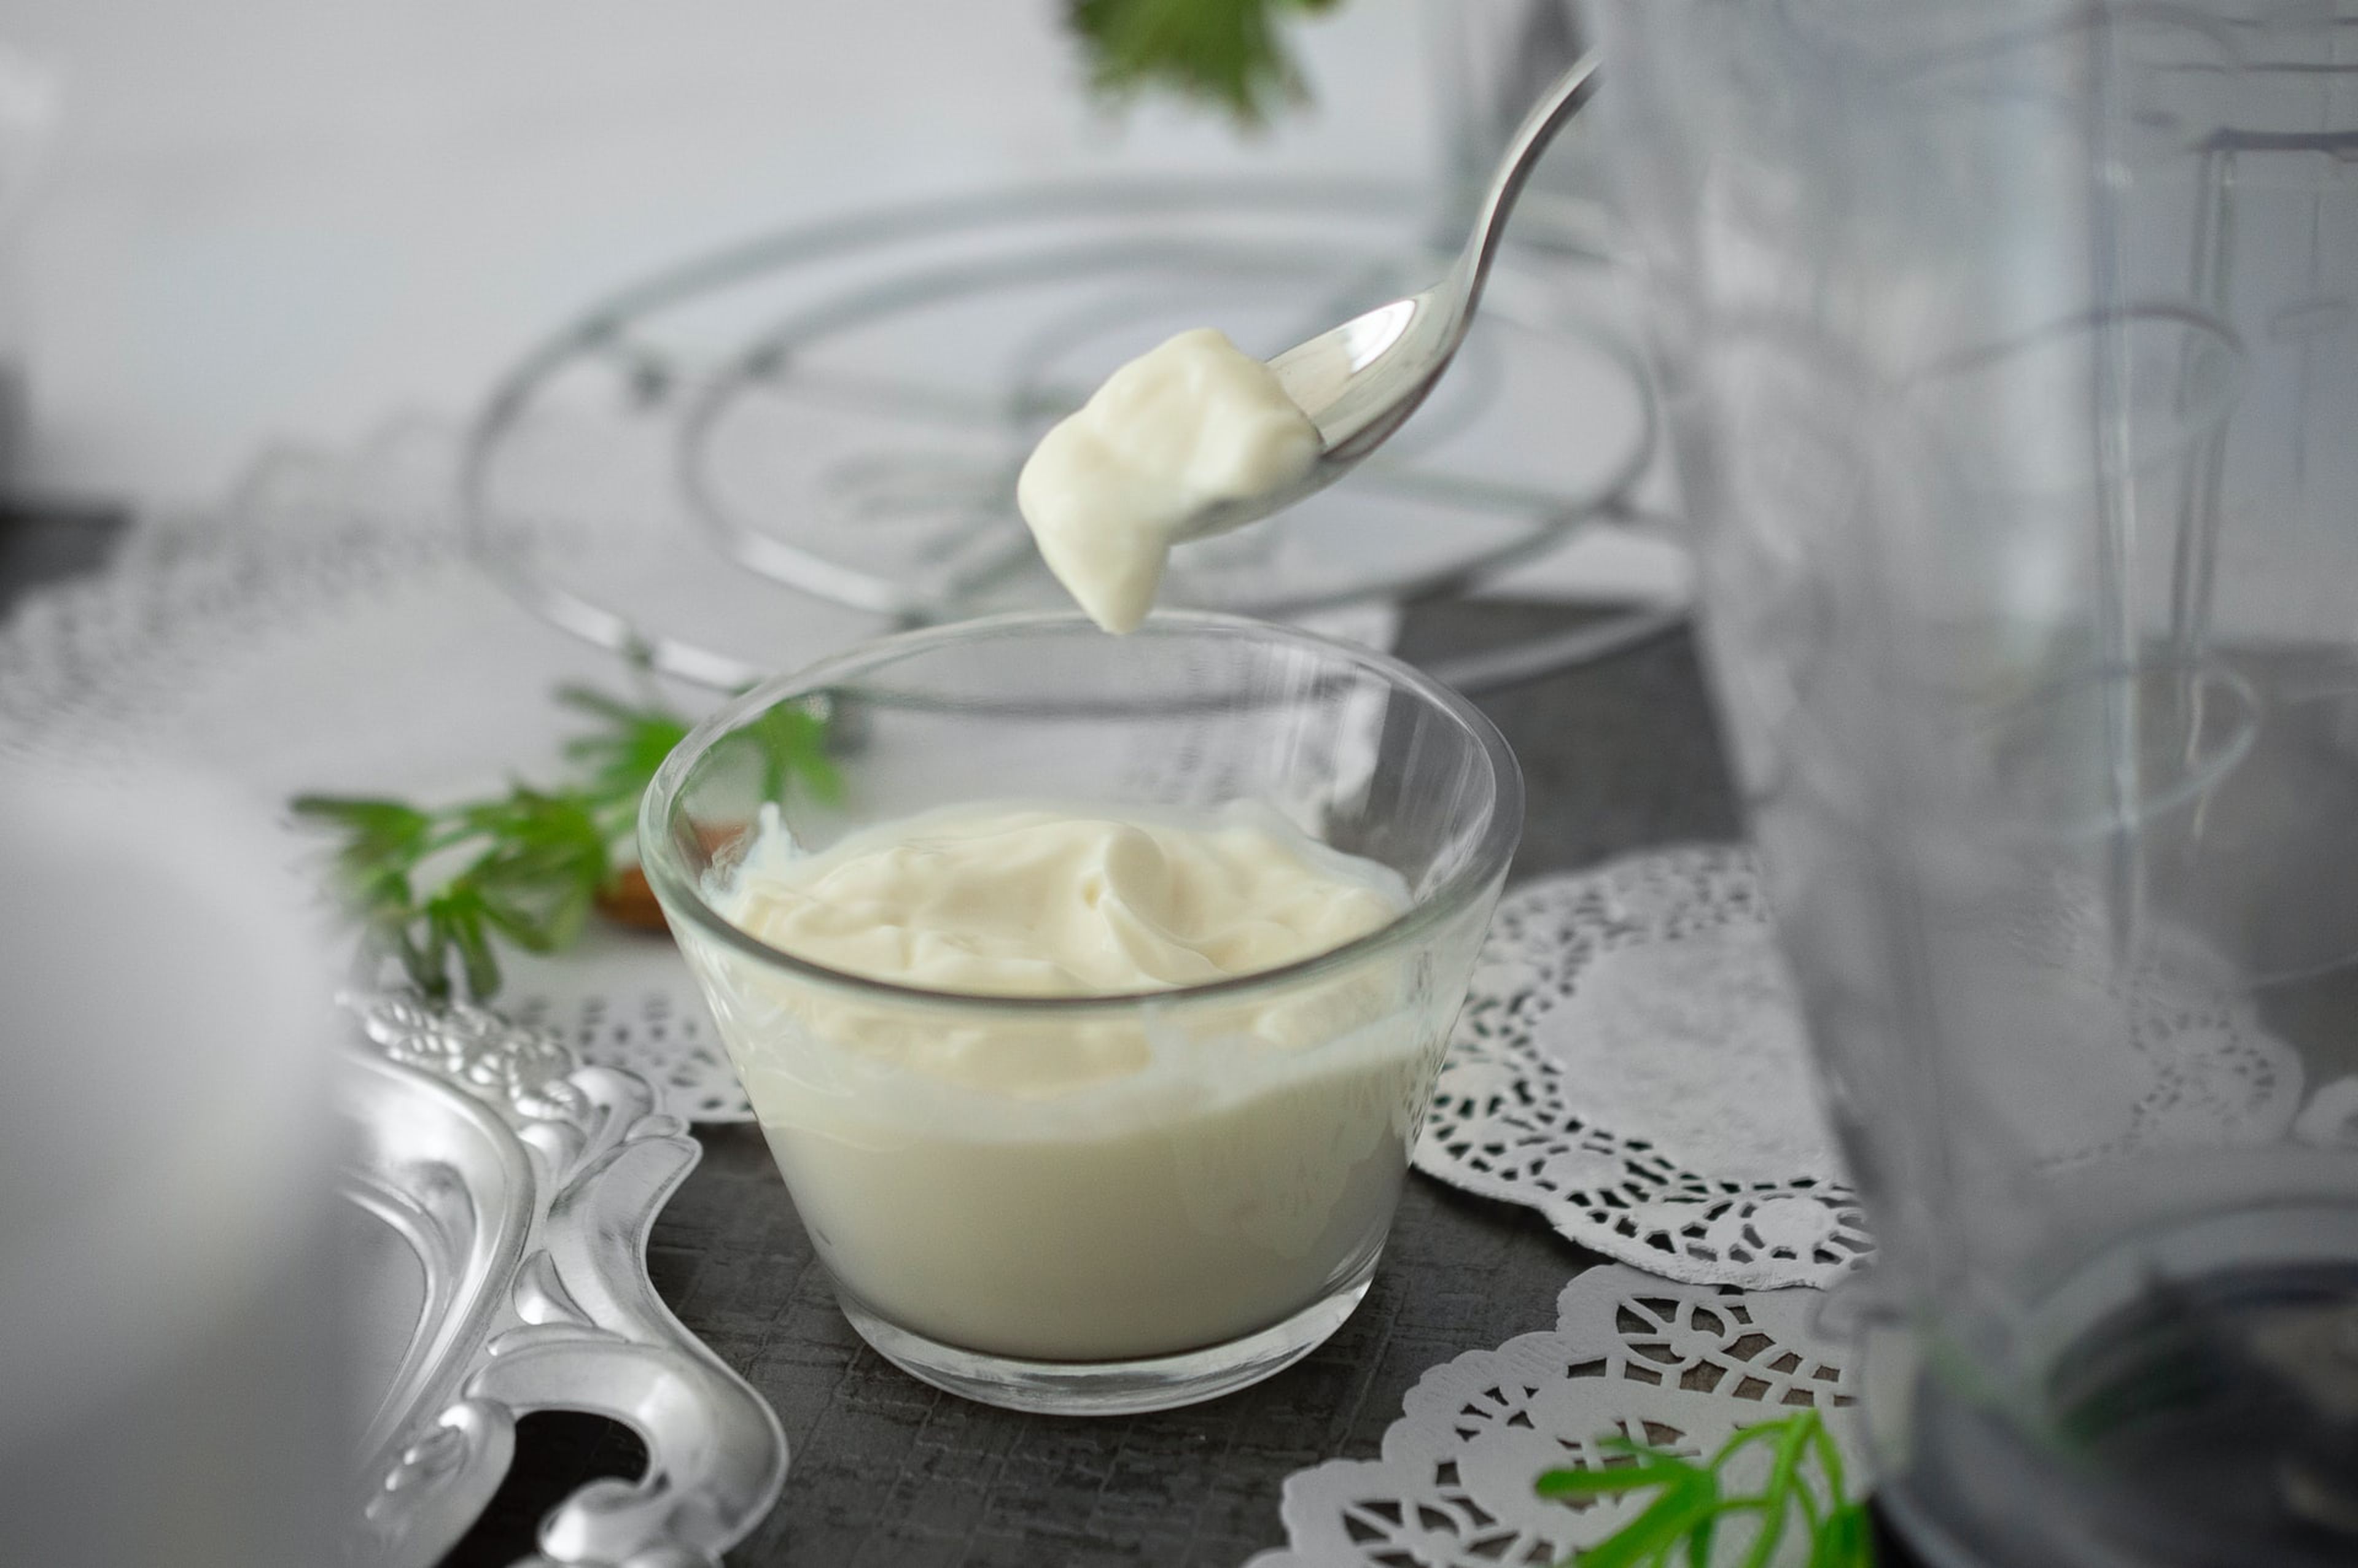 En dosis pequeñas, la mayonesa es un alimento saludable rico en grasas insaturadas.